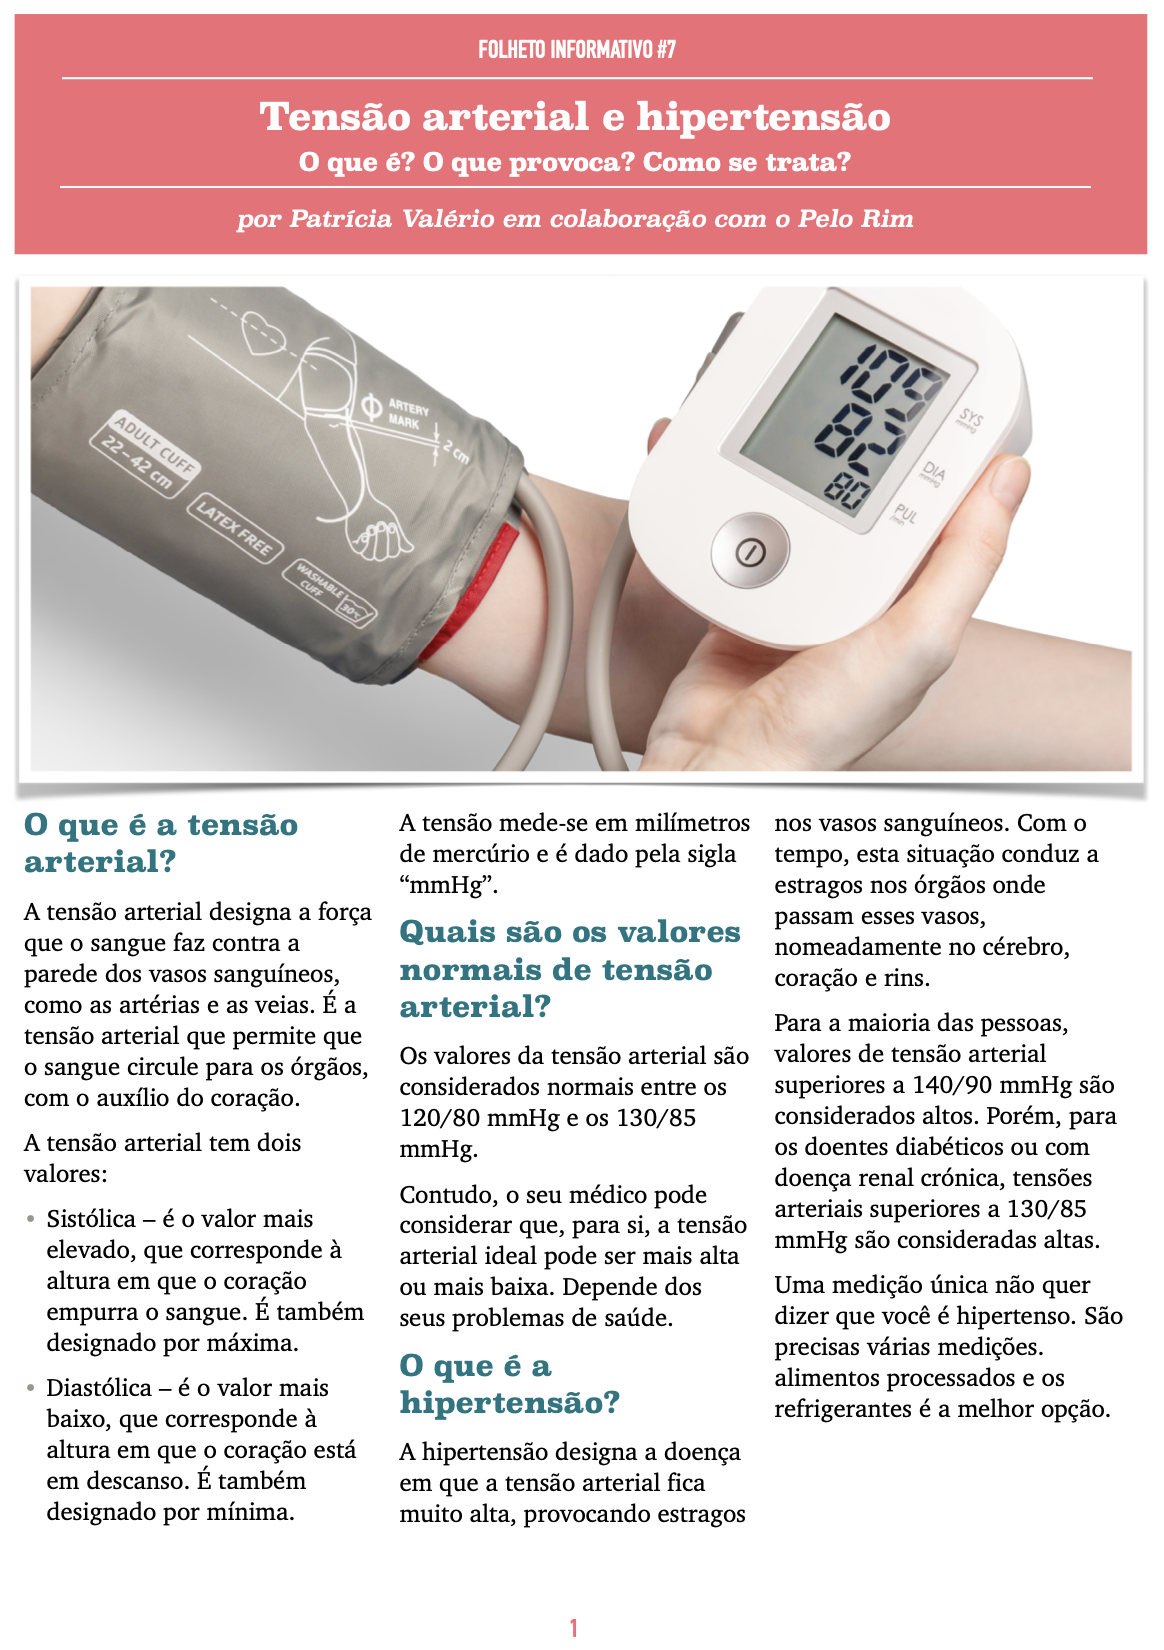 Folheto 7 - Tensão arterial e hipertensão_p1.png